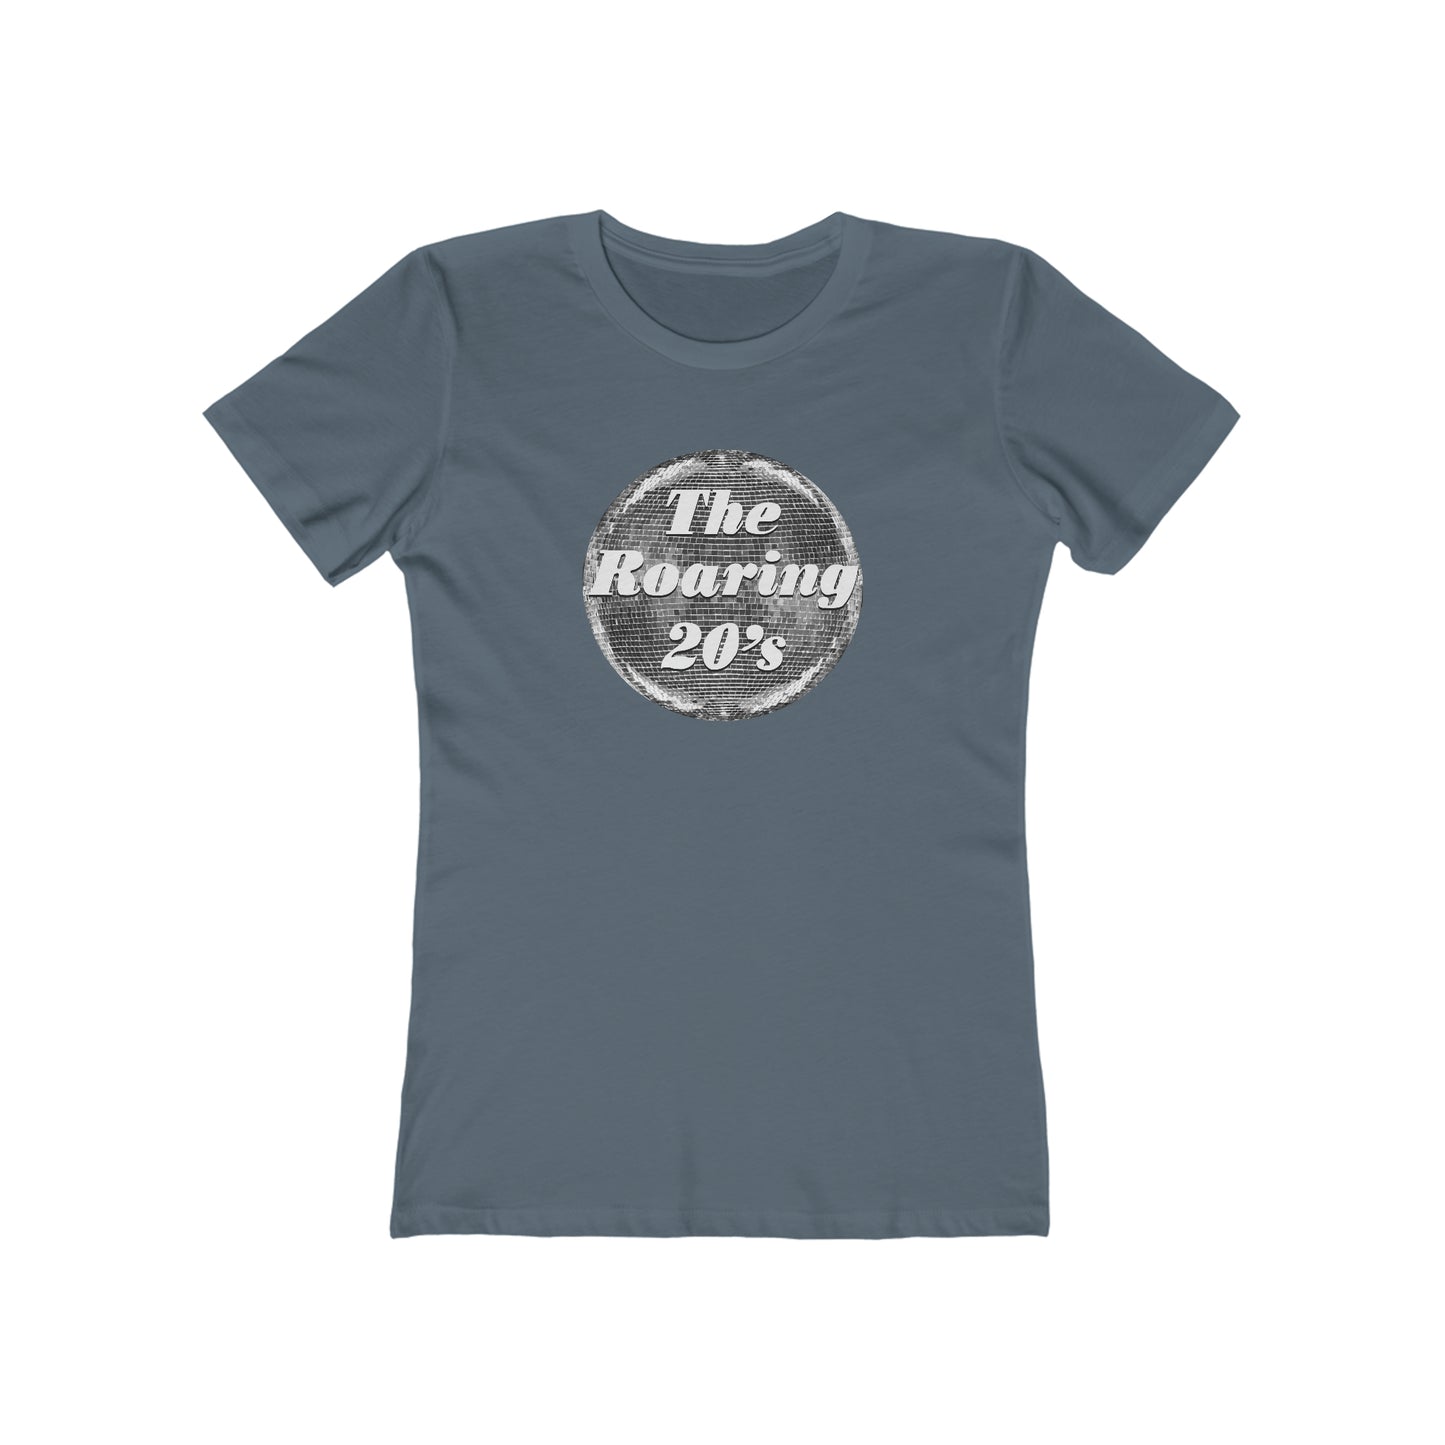 Roaring 20's - Women's T-Shirt